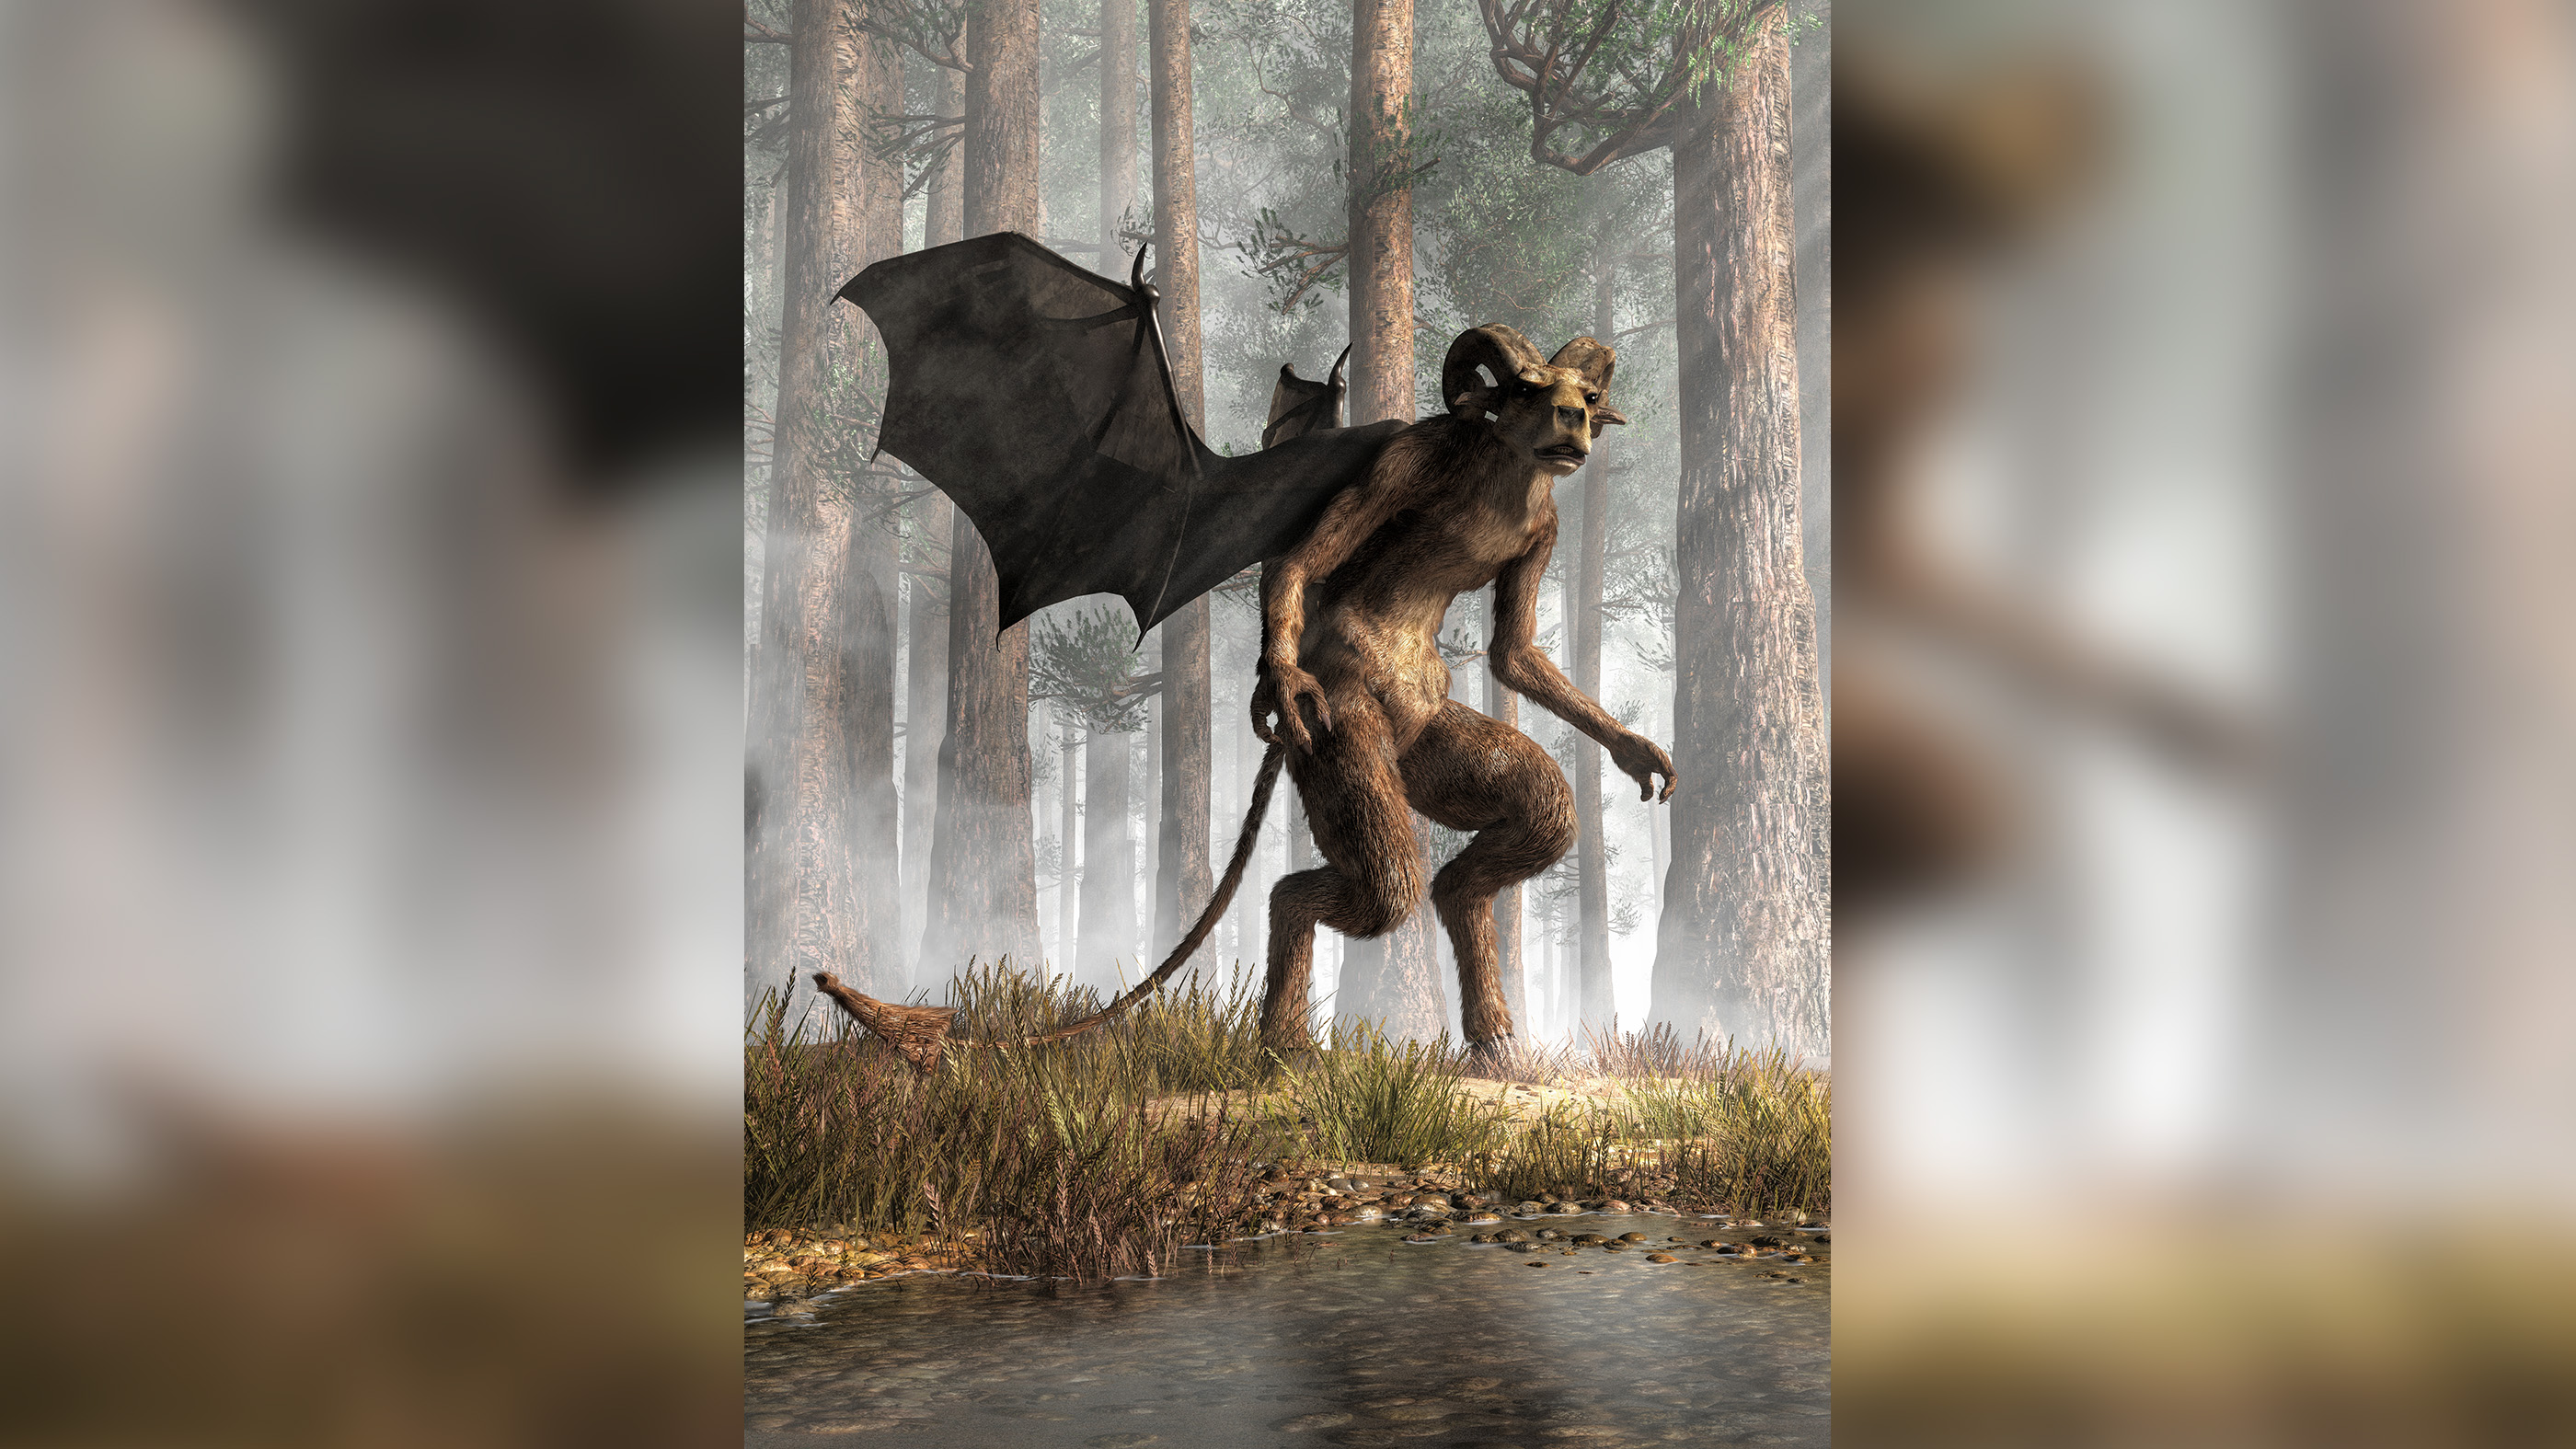 Este renderizado en 3D muestra el aspecto que debía tener el mítico Diablo de Jersey, con patas de pezuña, cuernos y alas de murciélago. El Diablo de Jersey es un legendario críptido del sur de Nueva Jersey.